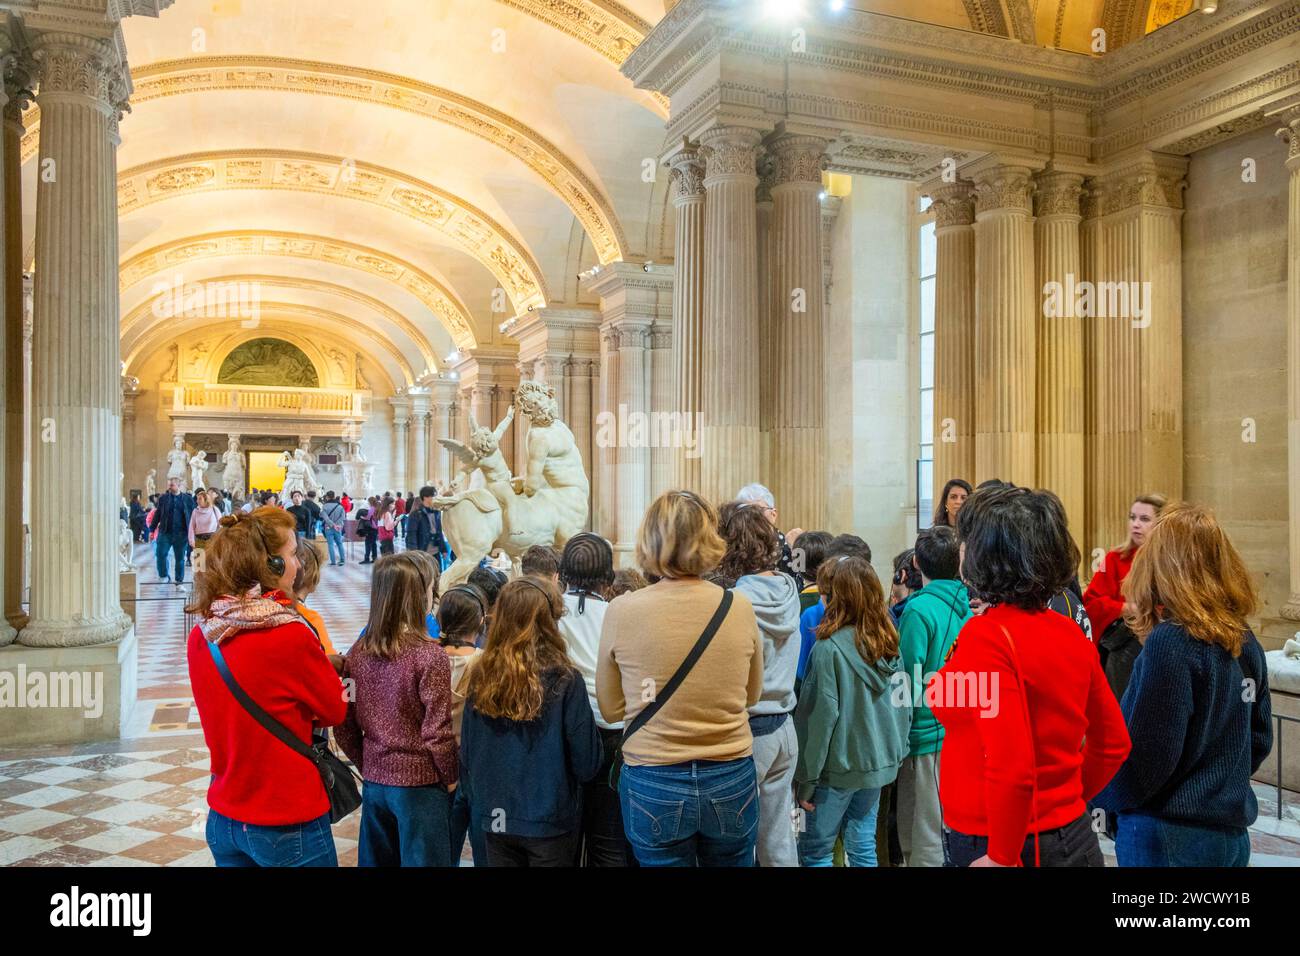 France, Paris, musée du Louvre, antiquité grecque, Centaure tourmenté par Eros (Cupidon) Banque D'Images